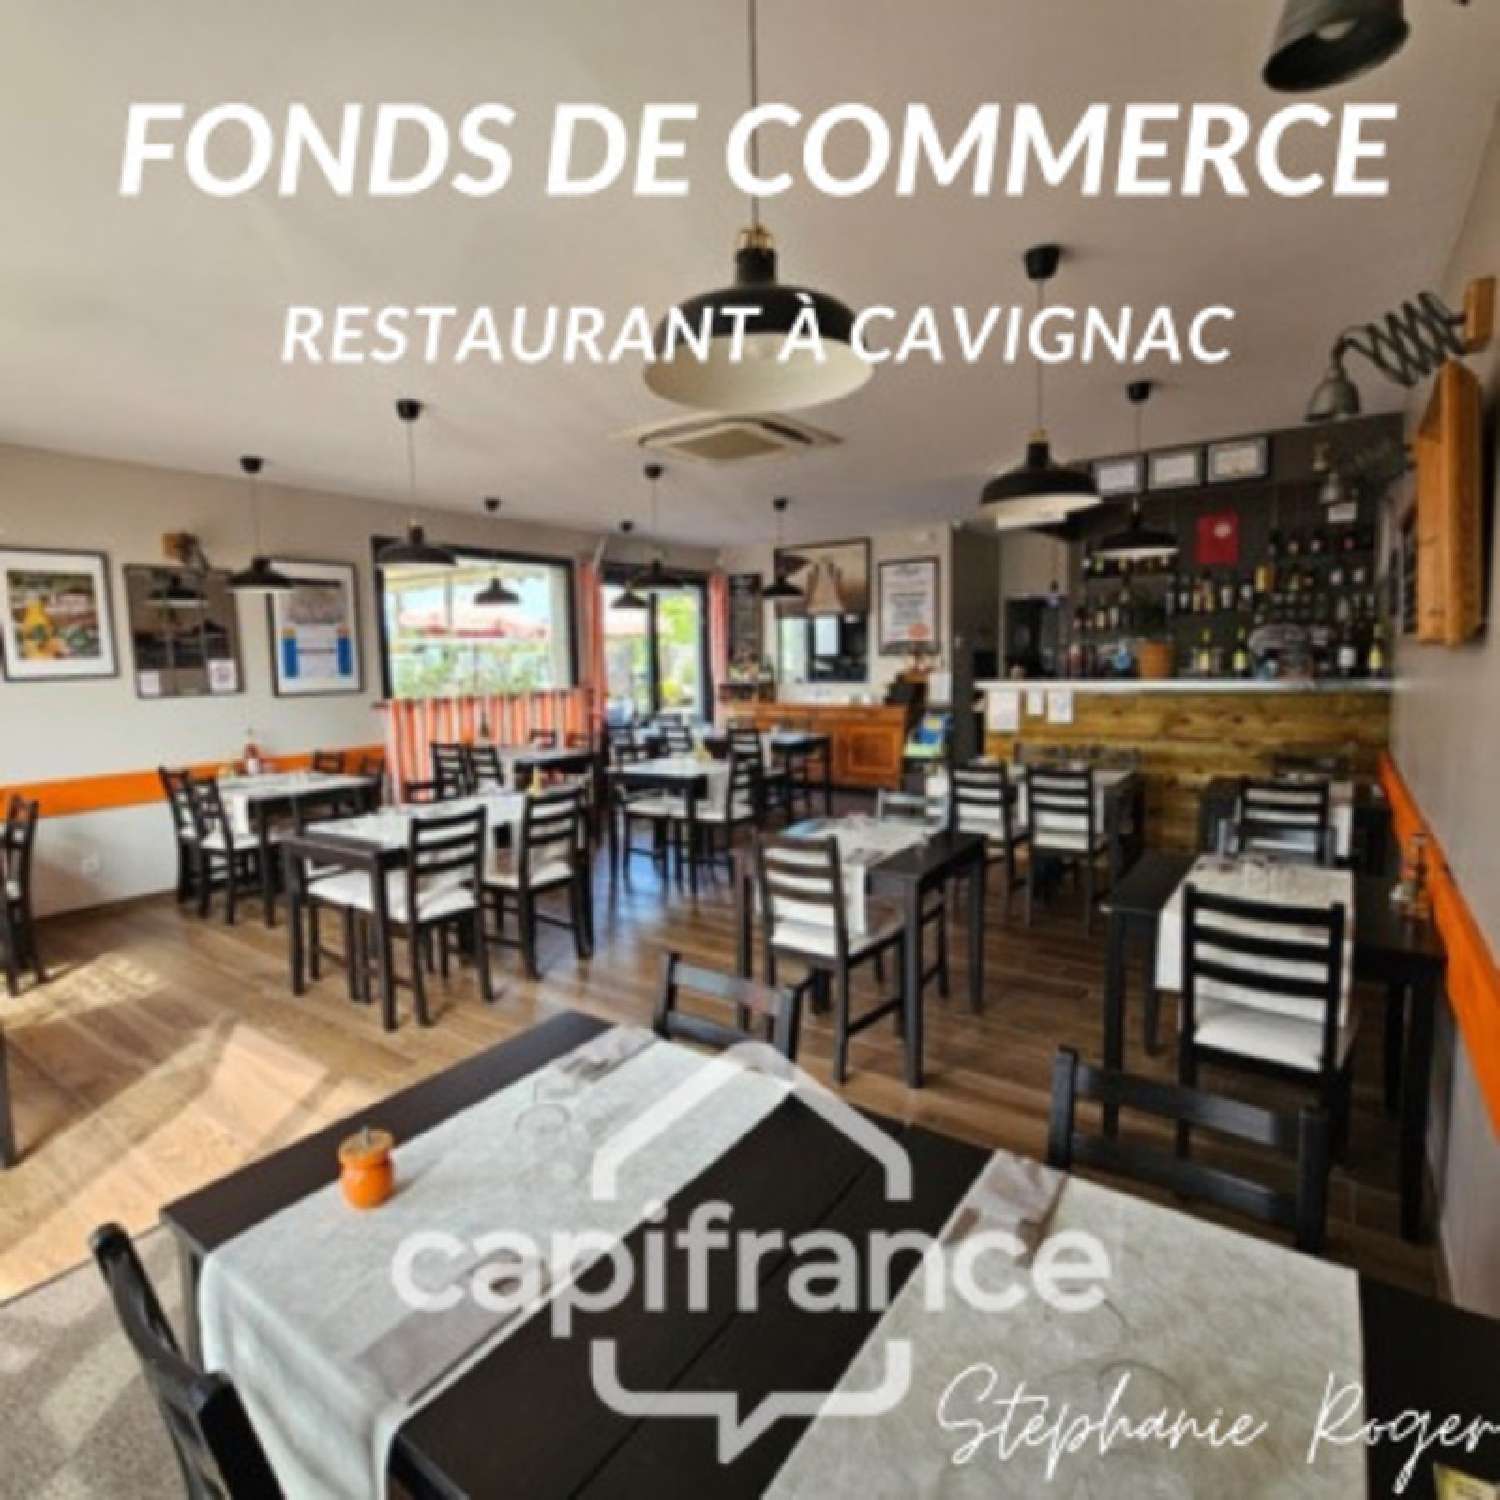  te koop restaurant Cavignac Gironde 1